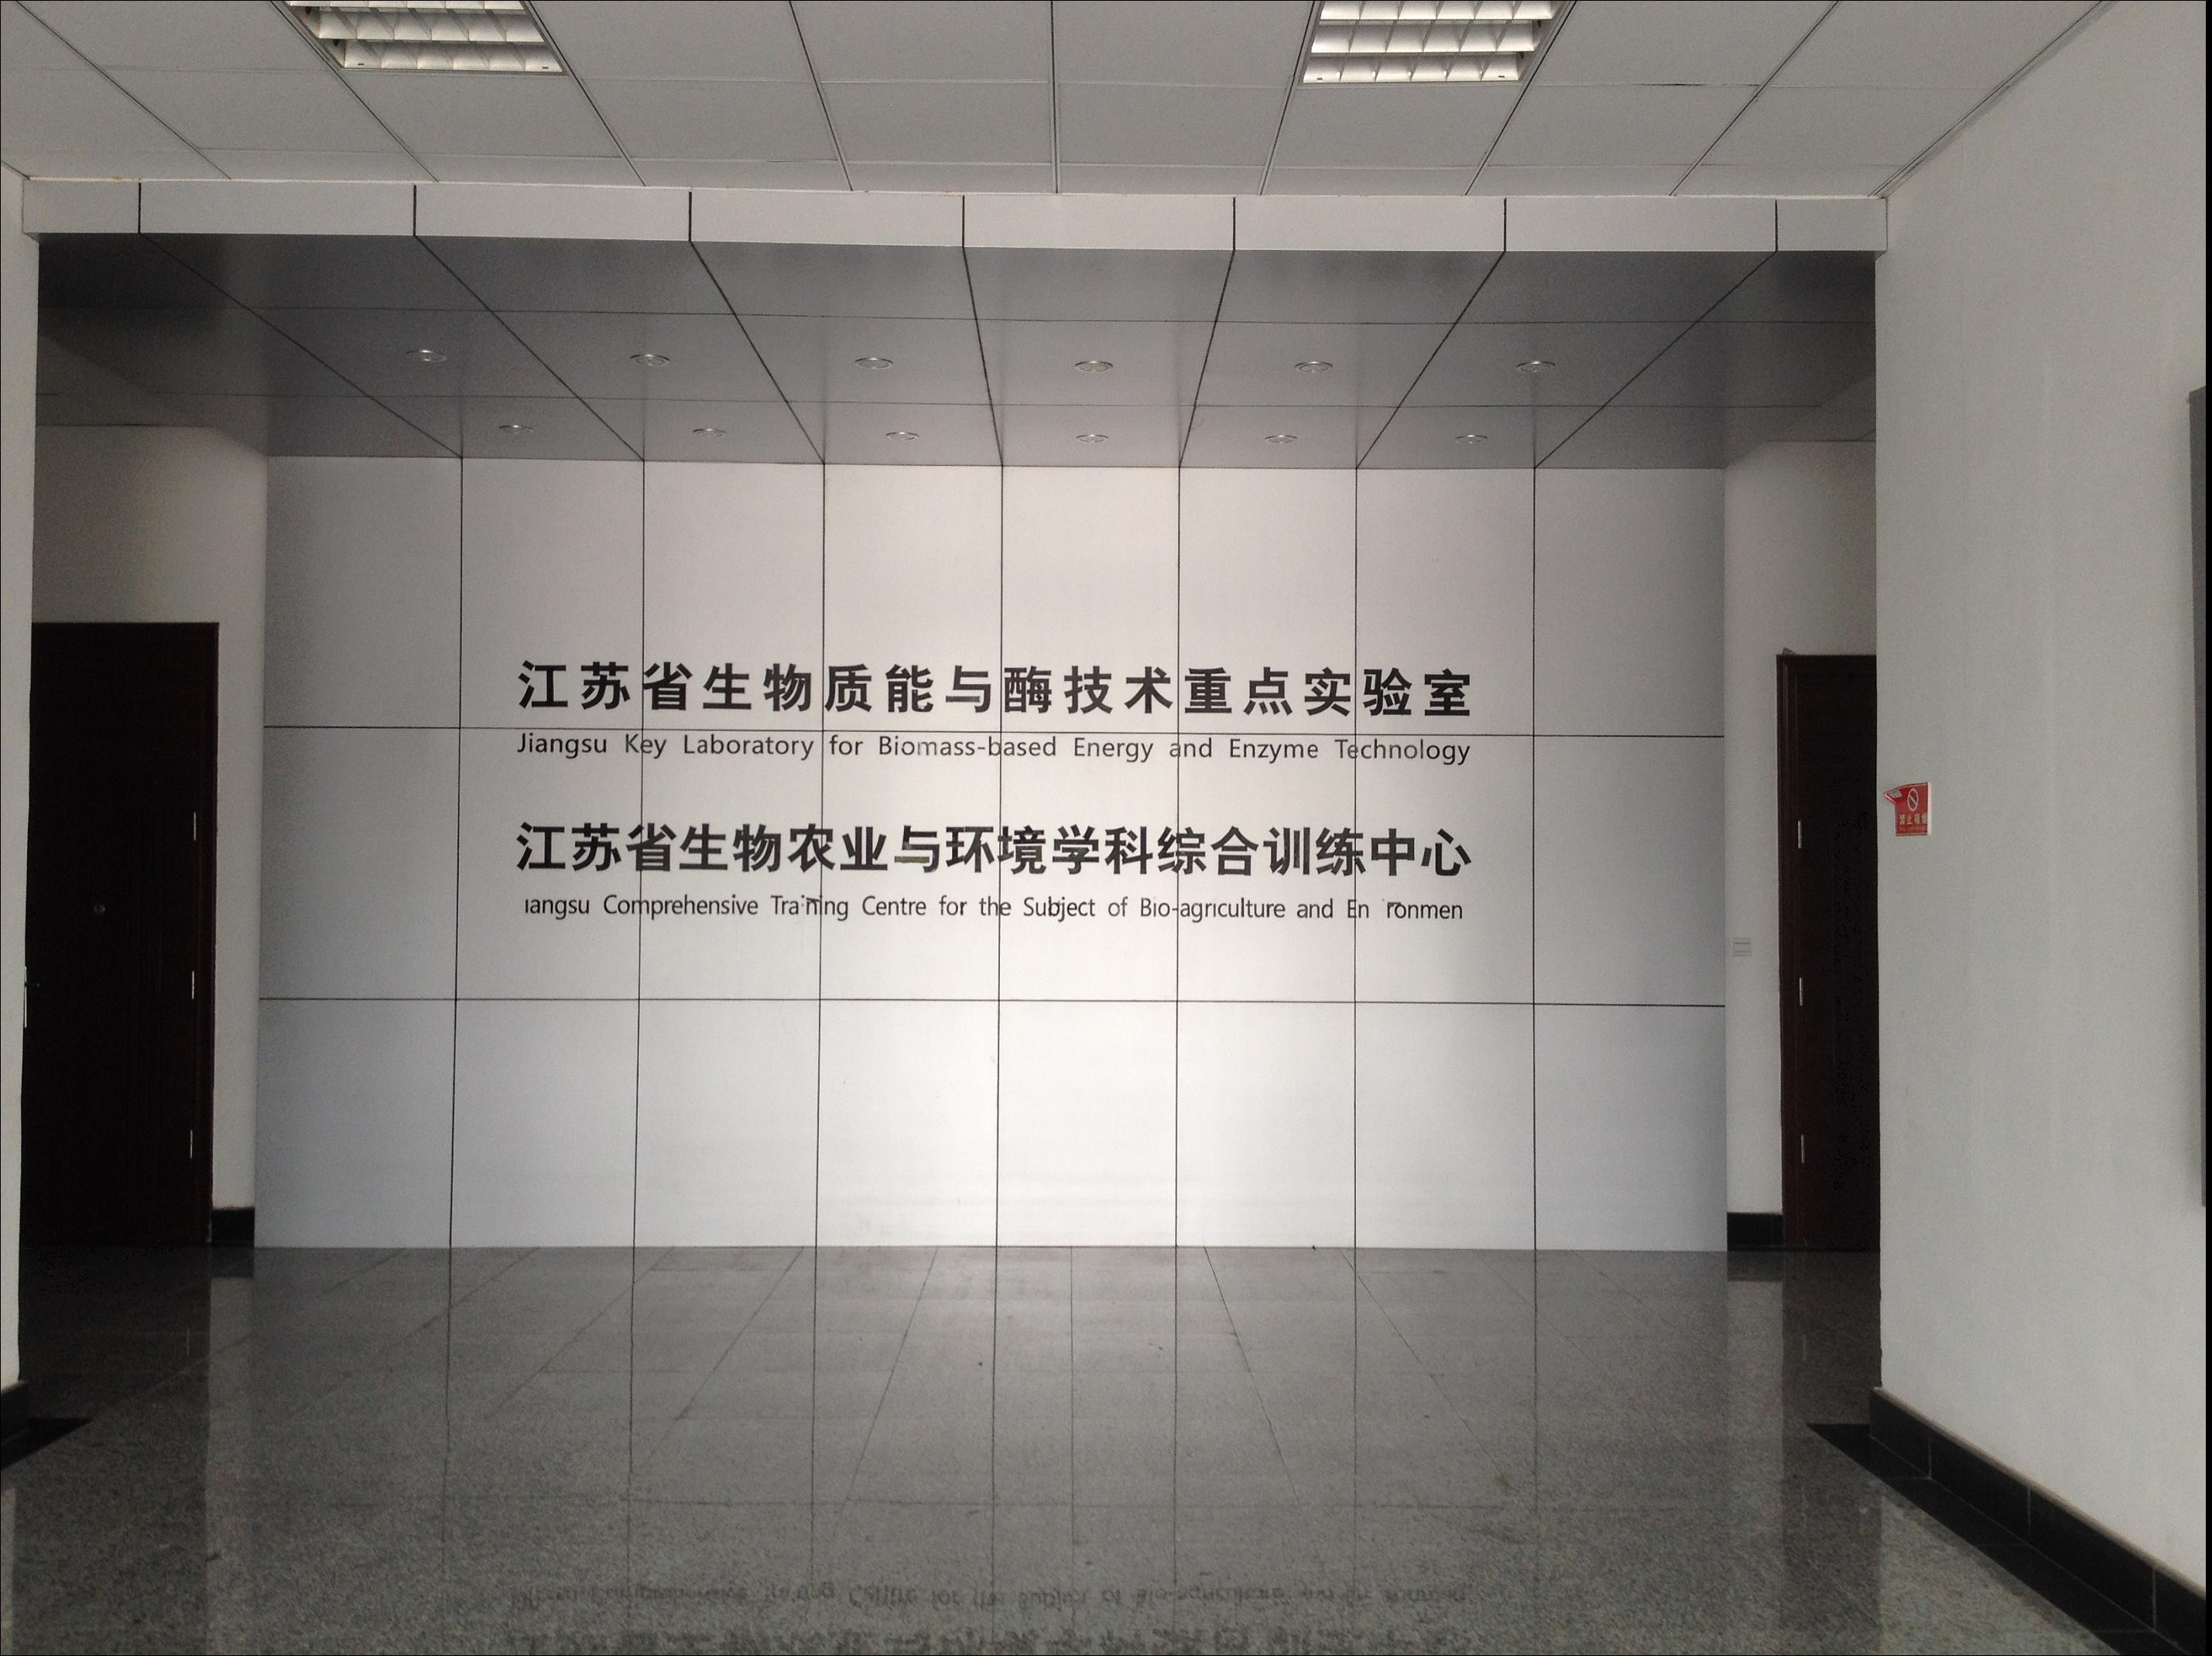 江苏省生物农业与环境学科综合训练中心